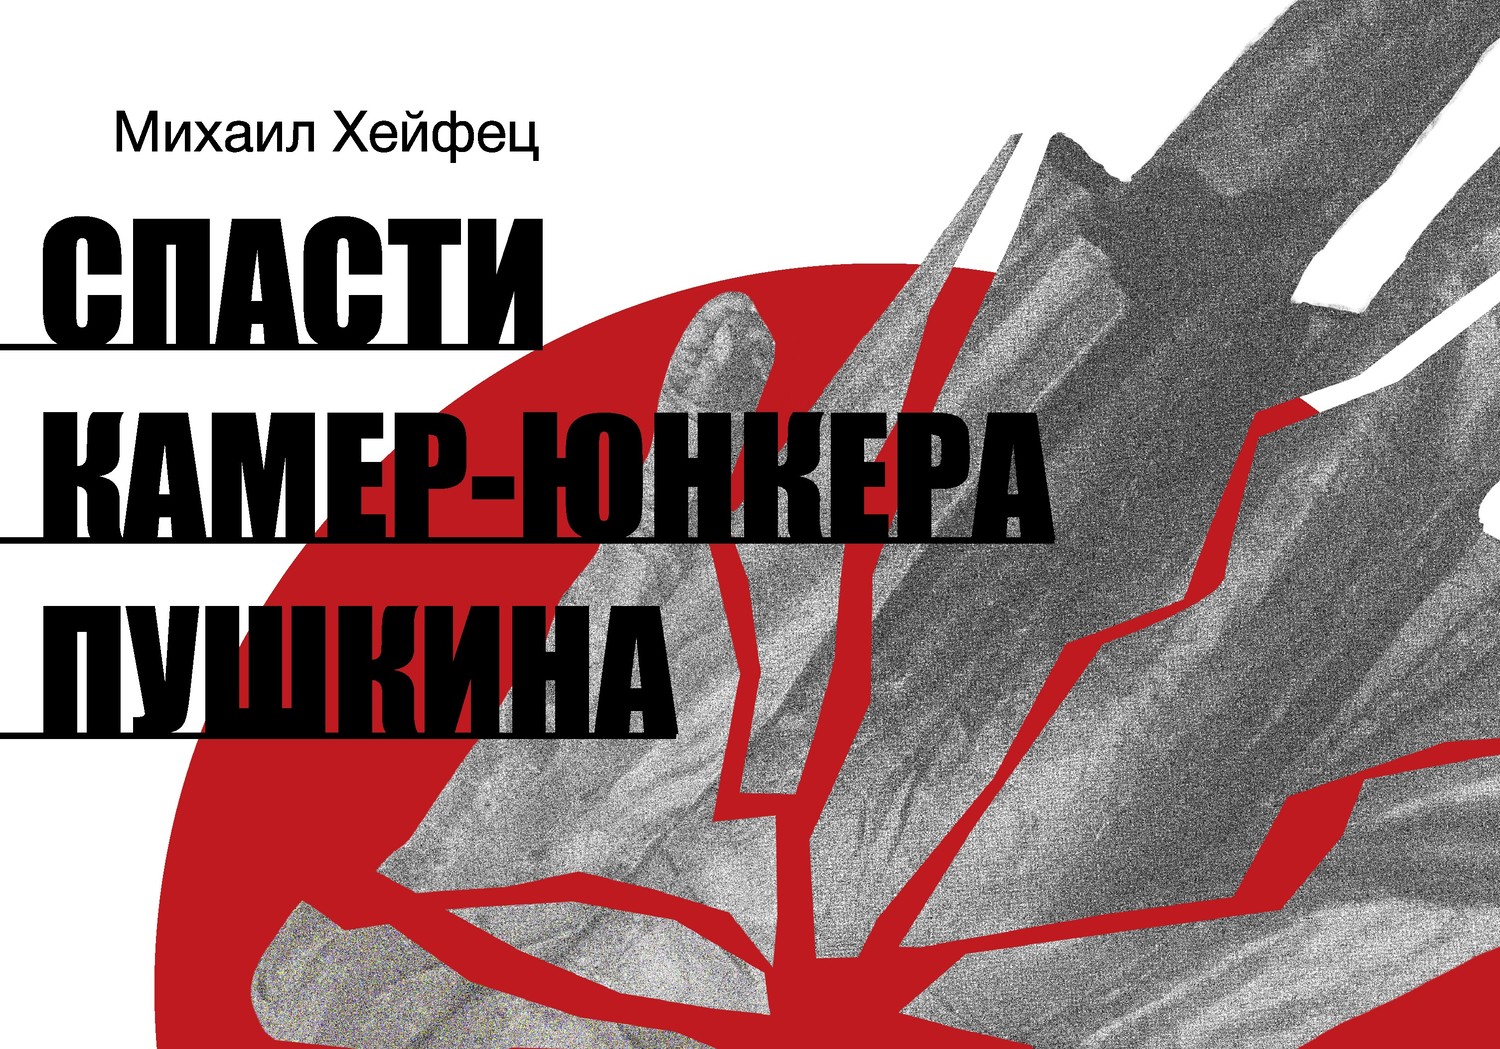 Готовится премьера спектакля «СПАСТИ КАМЕР-ЮНКЕРА ПУШКИНА» по пьесе Михаила Хейфеца